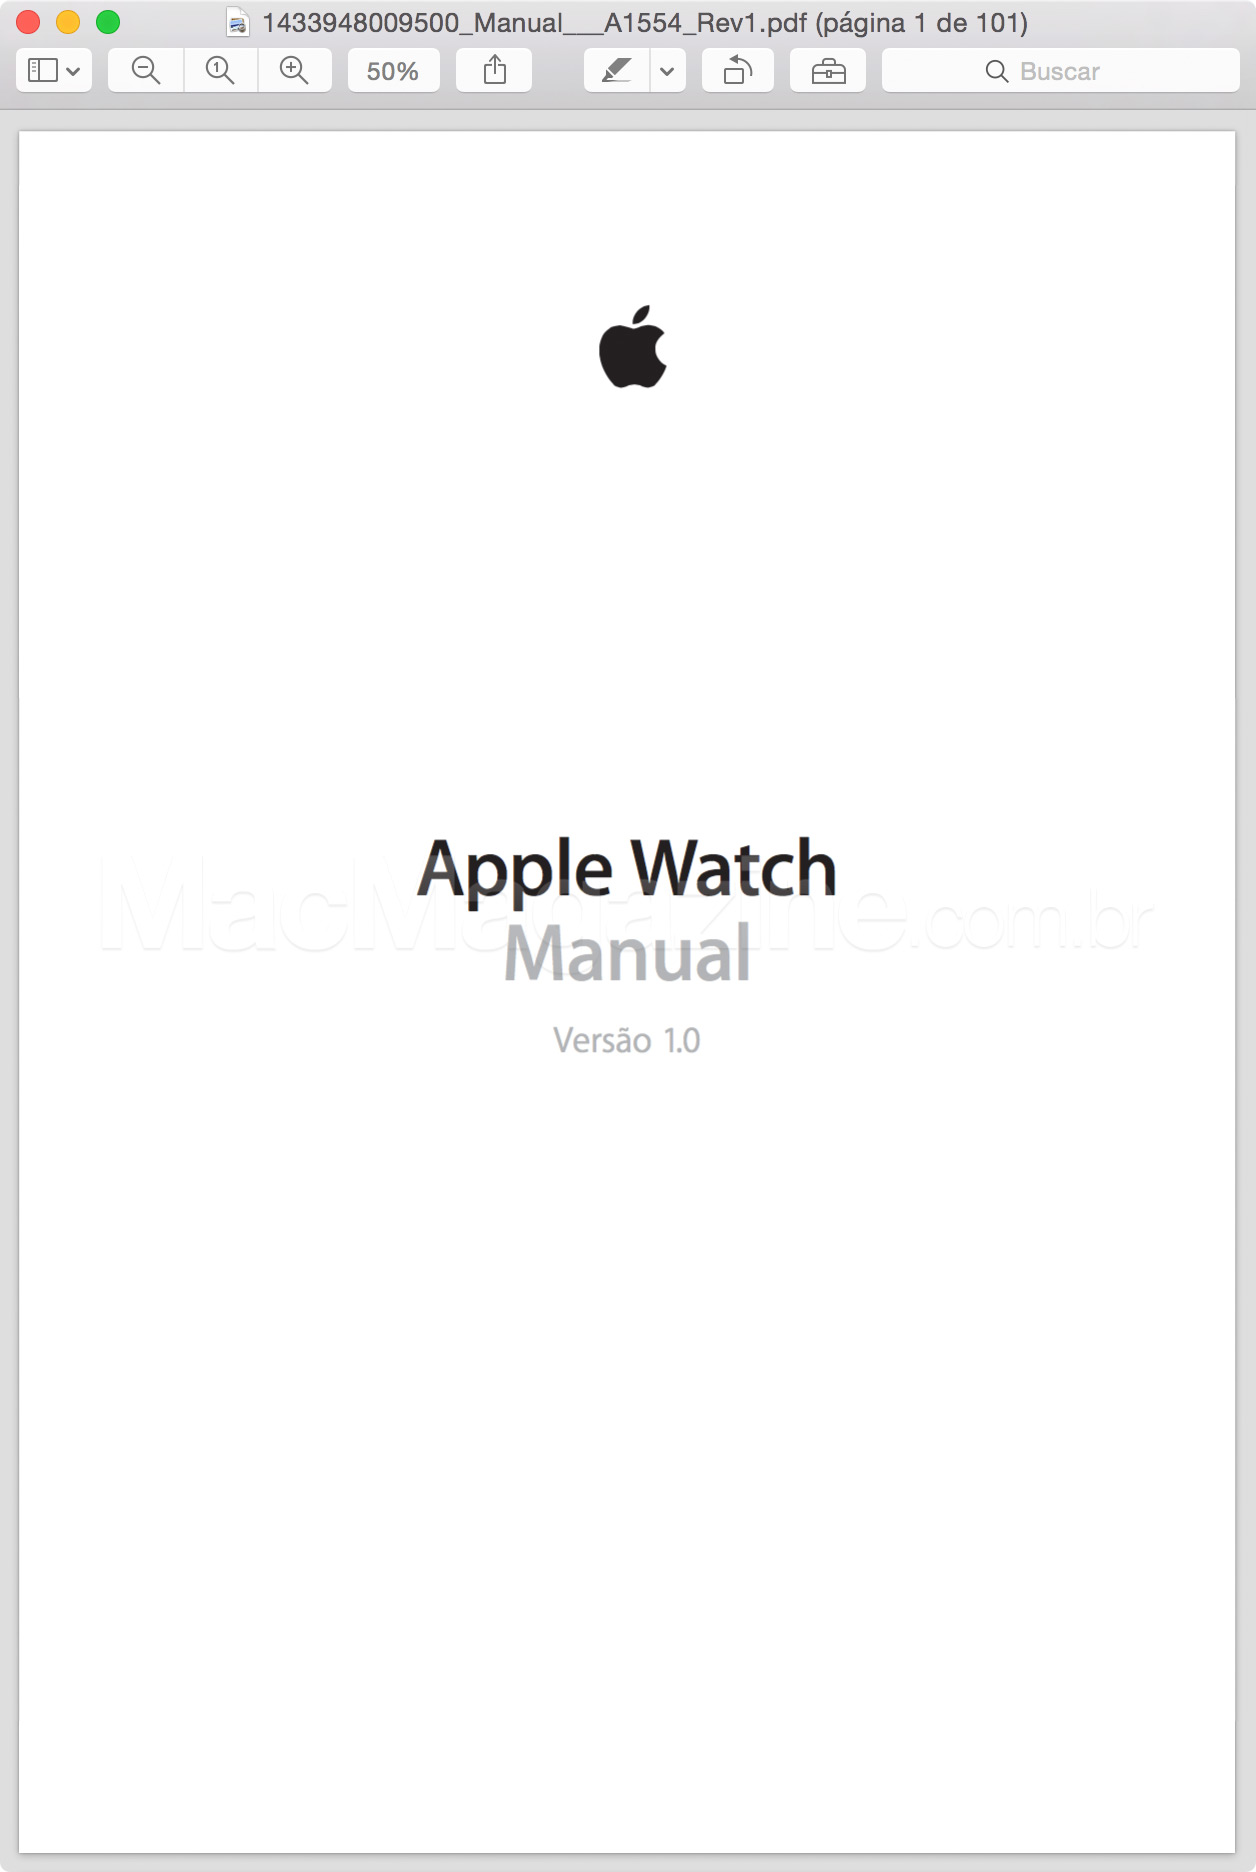 Homologação do Apple Watch pela Anatel